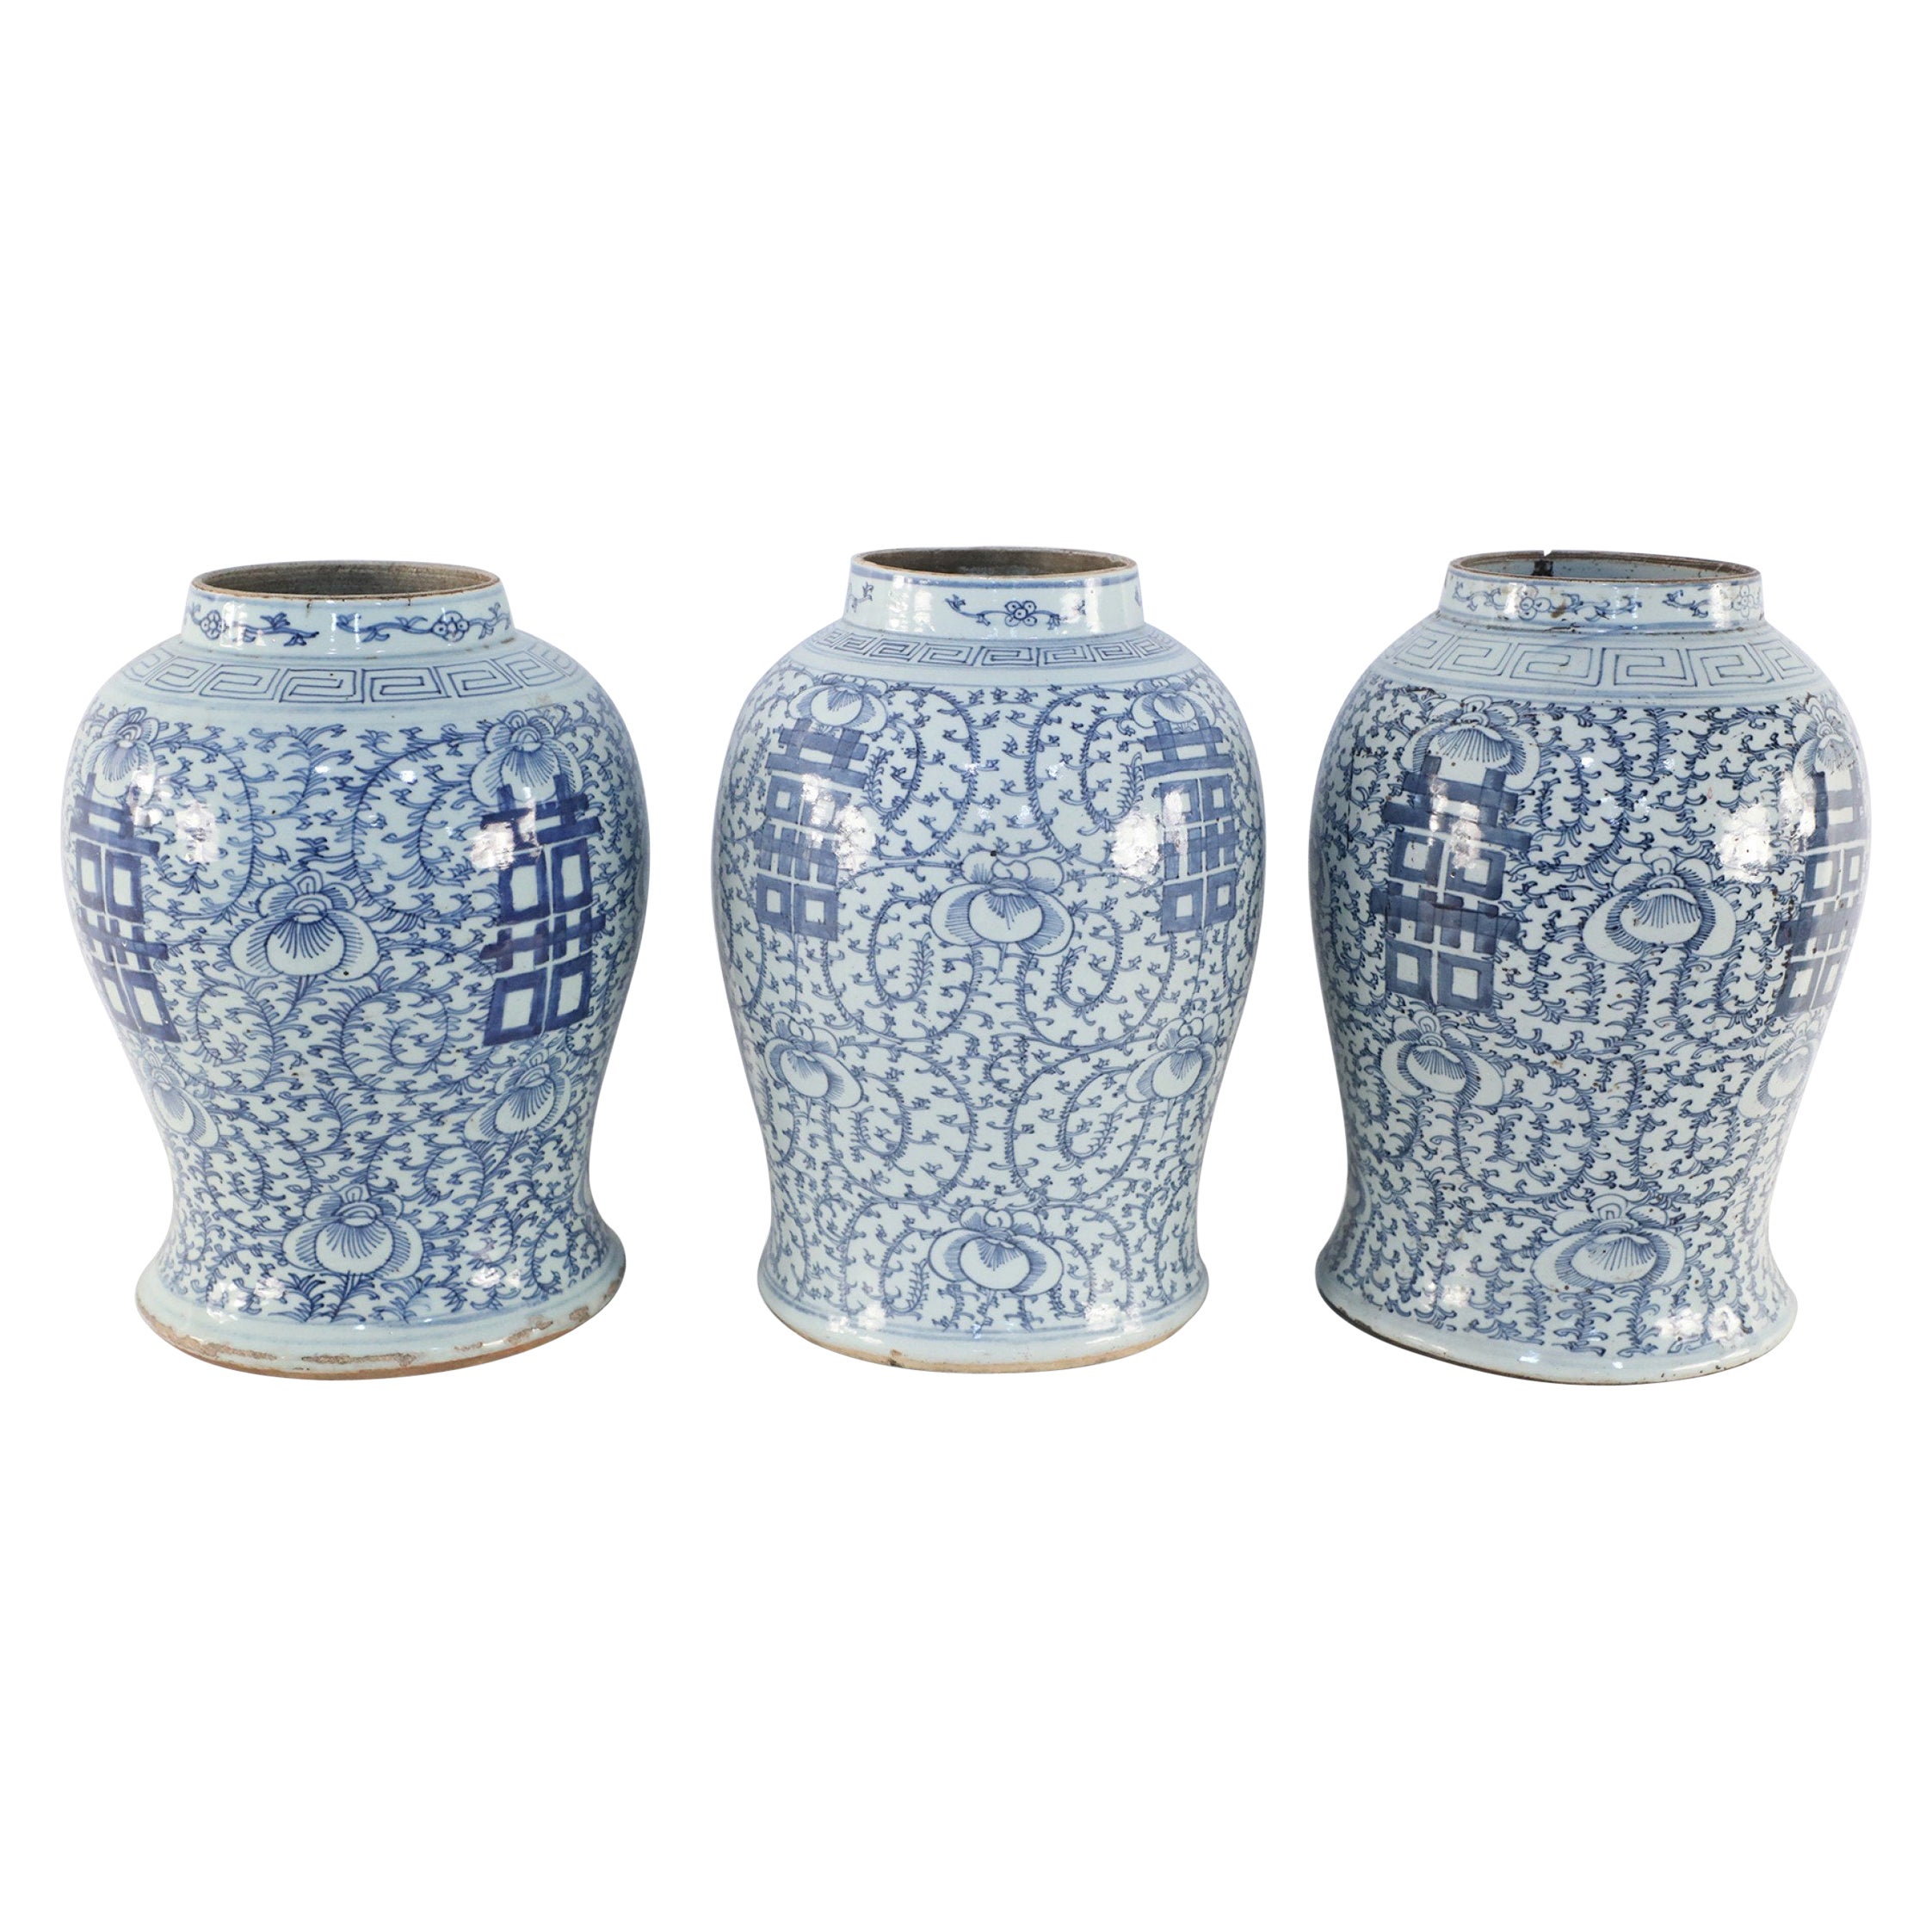 Chinesische Porzellanurnenvasen in Off-White und Blau mit Weinreben-Charakter